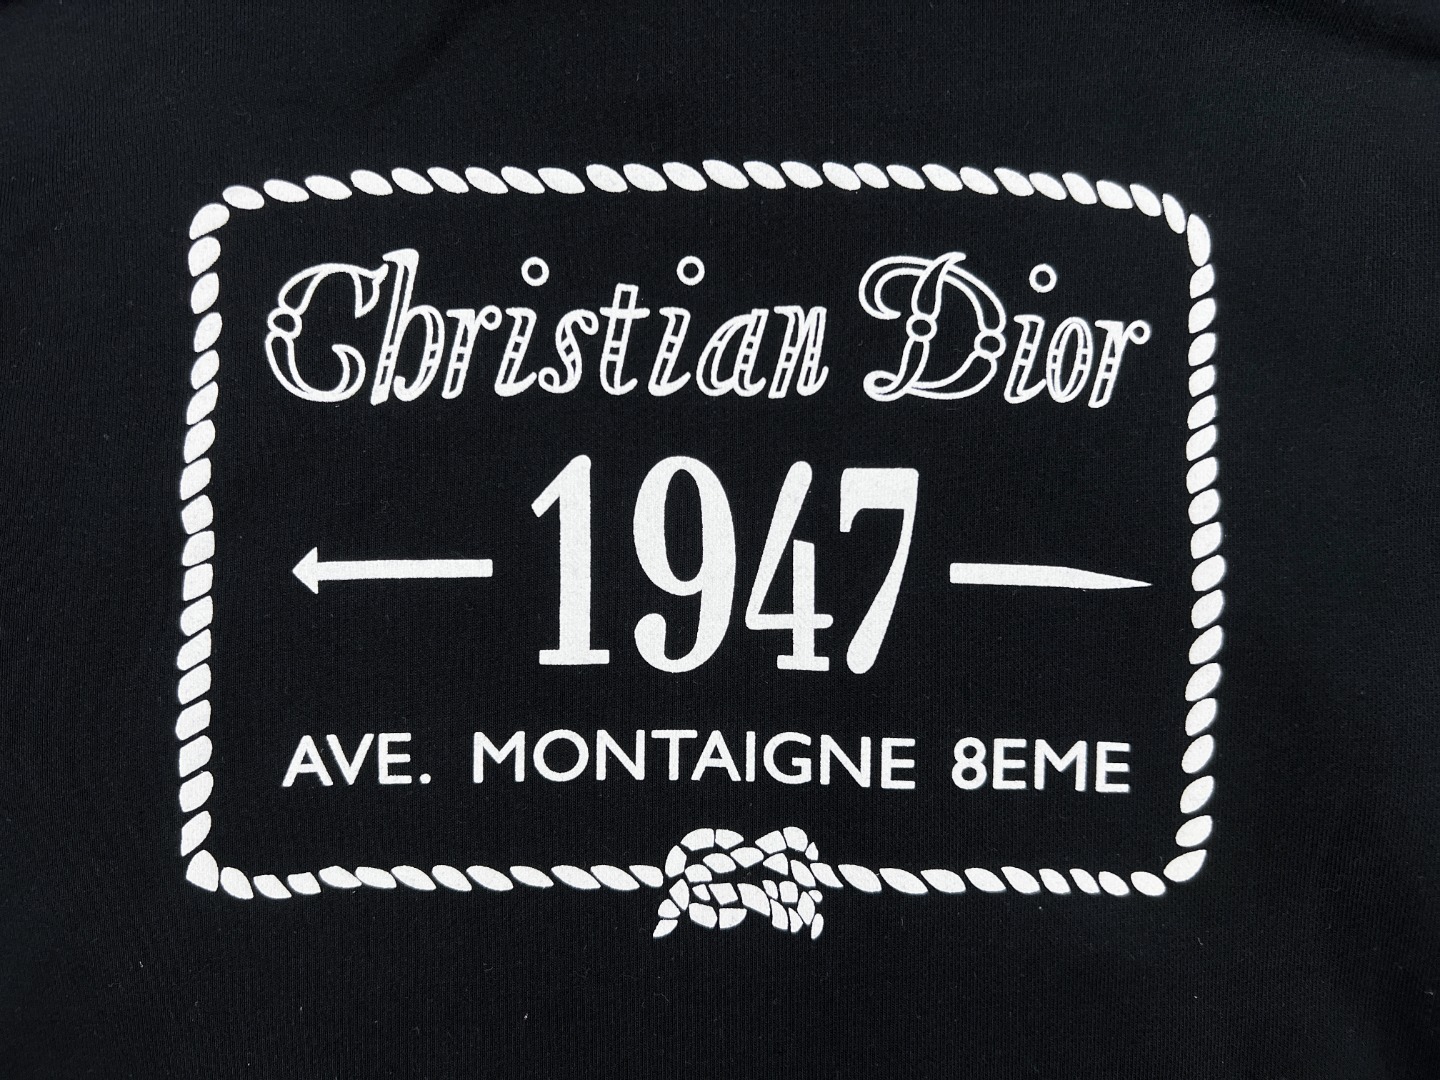 【新款上架】DIOR 2022秋季新款，“Christian Dior 1947”后背刺绣印花连帽运动衫